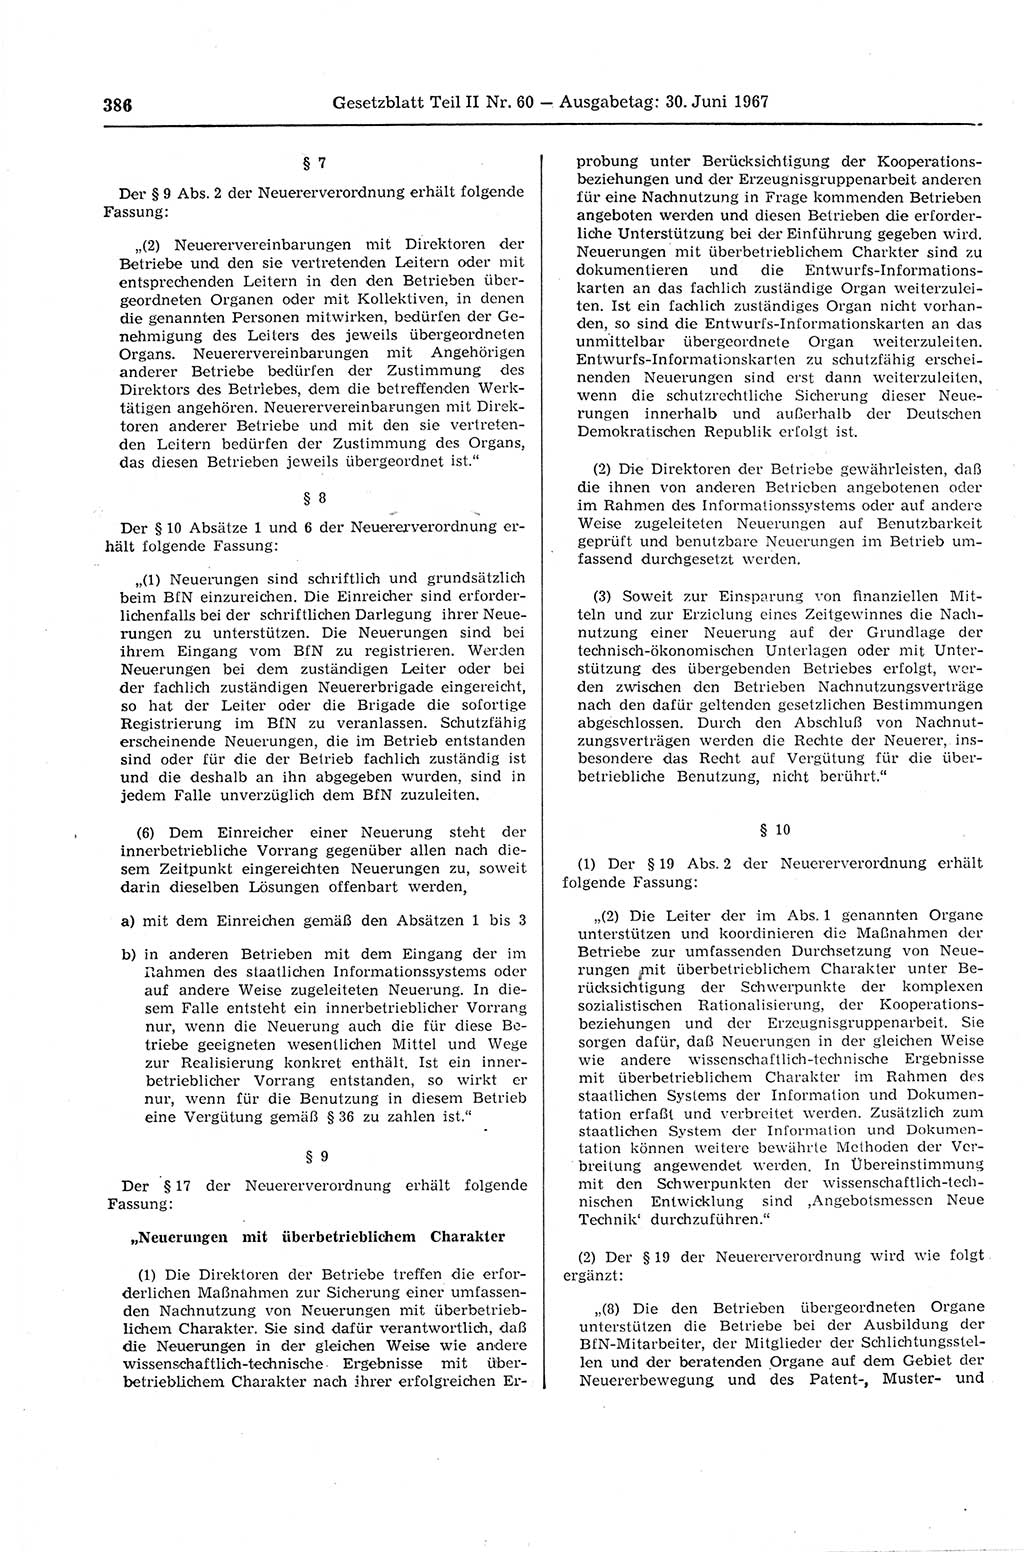 Gesetzblatt (GBl.) der Deutschen Demokratischen Republik (DDR) Teil ⅠⅠ 1967, Seite 386 (GBl. DDR ⅠⅠ 1967, S. 386)